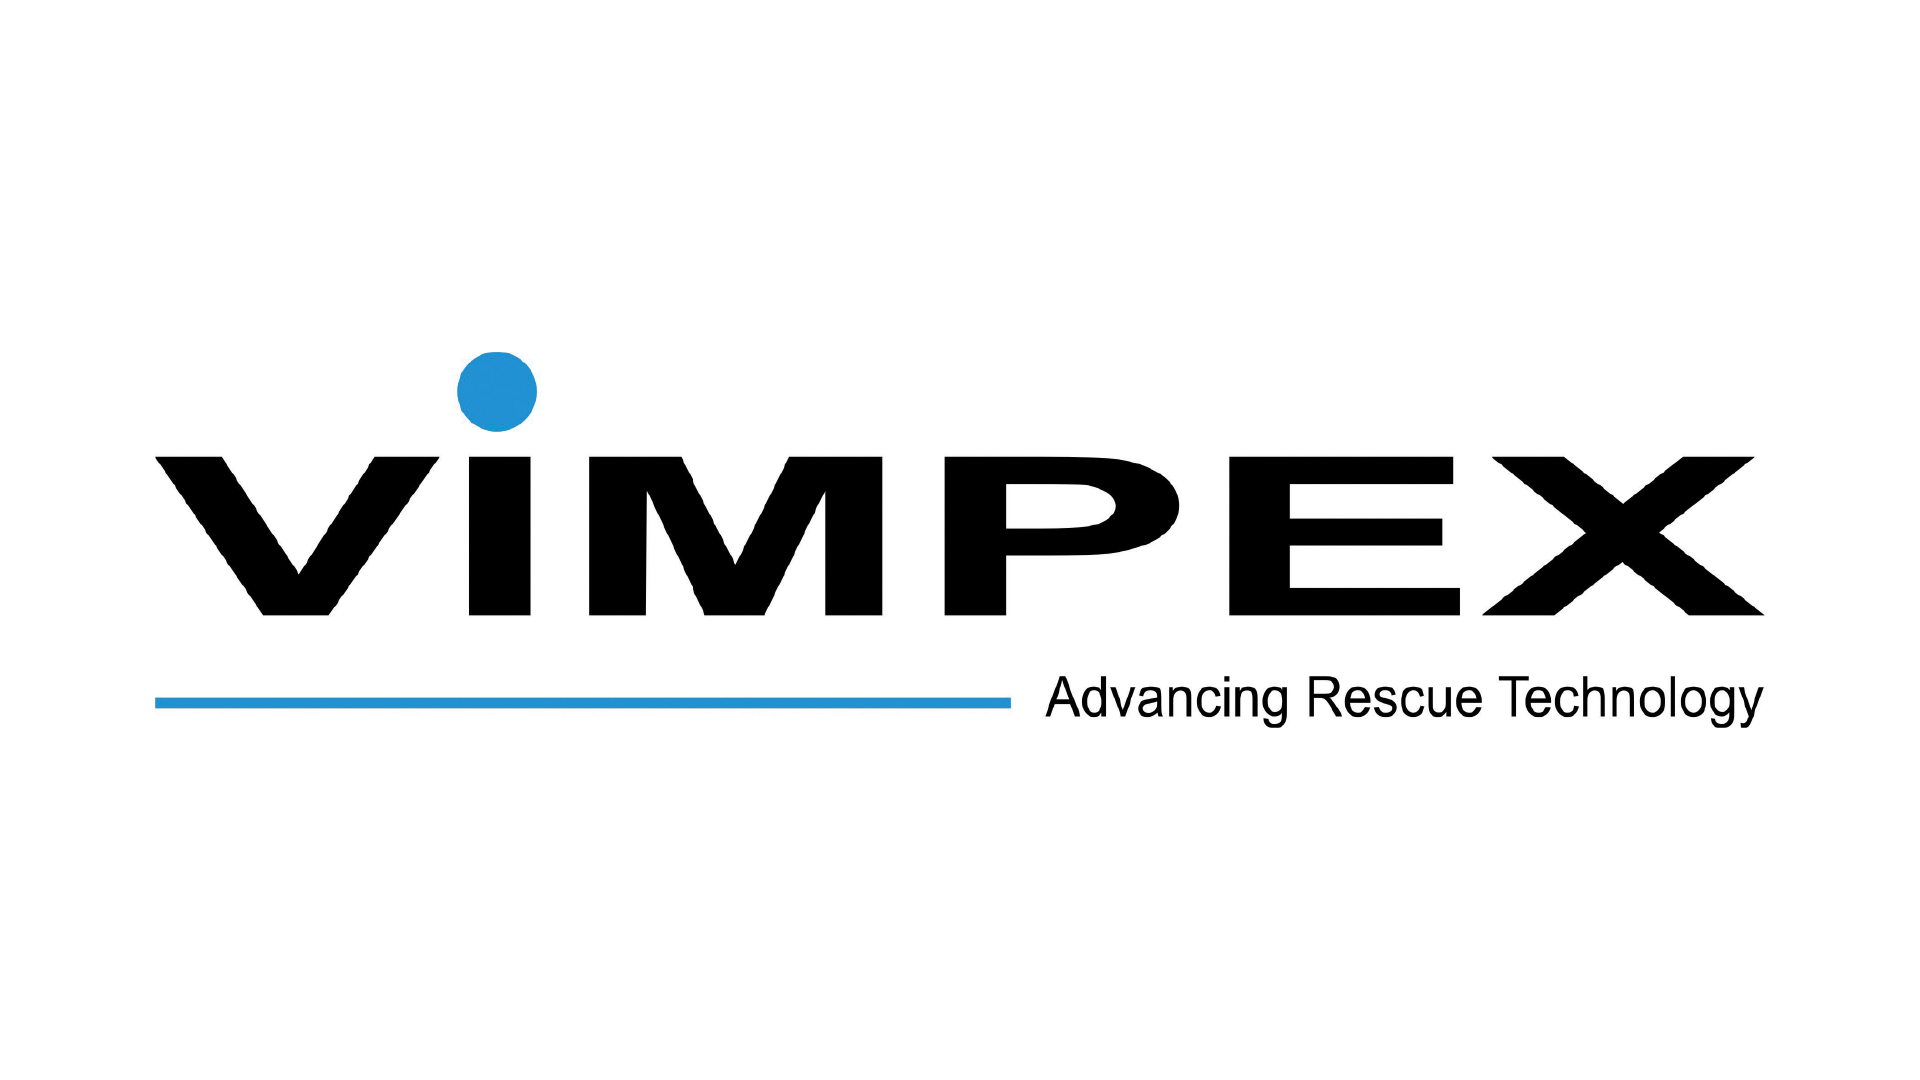 Vimpex logo